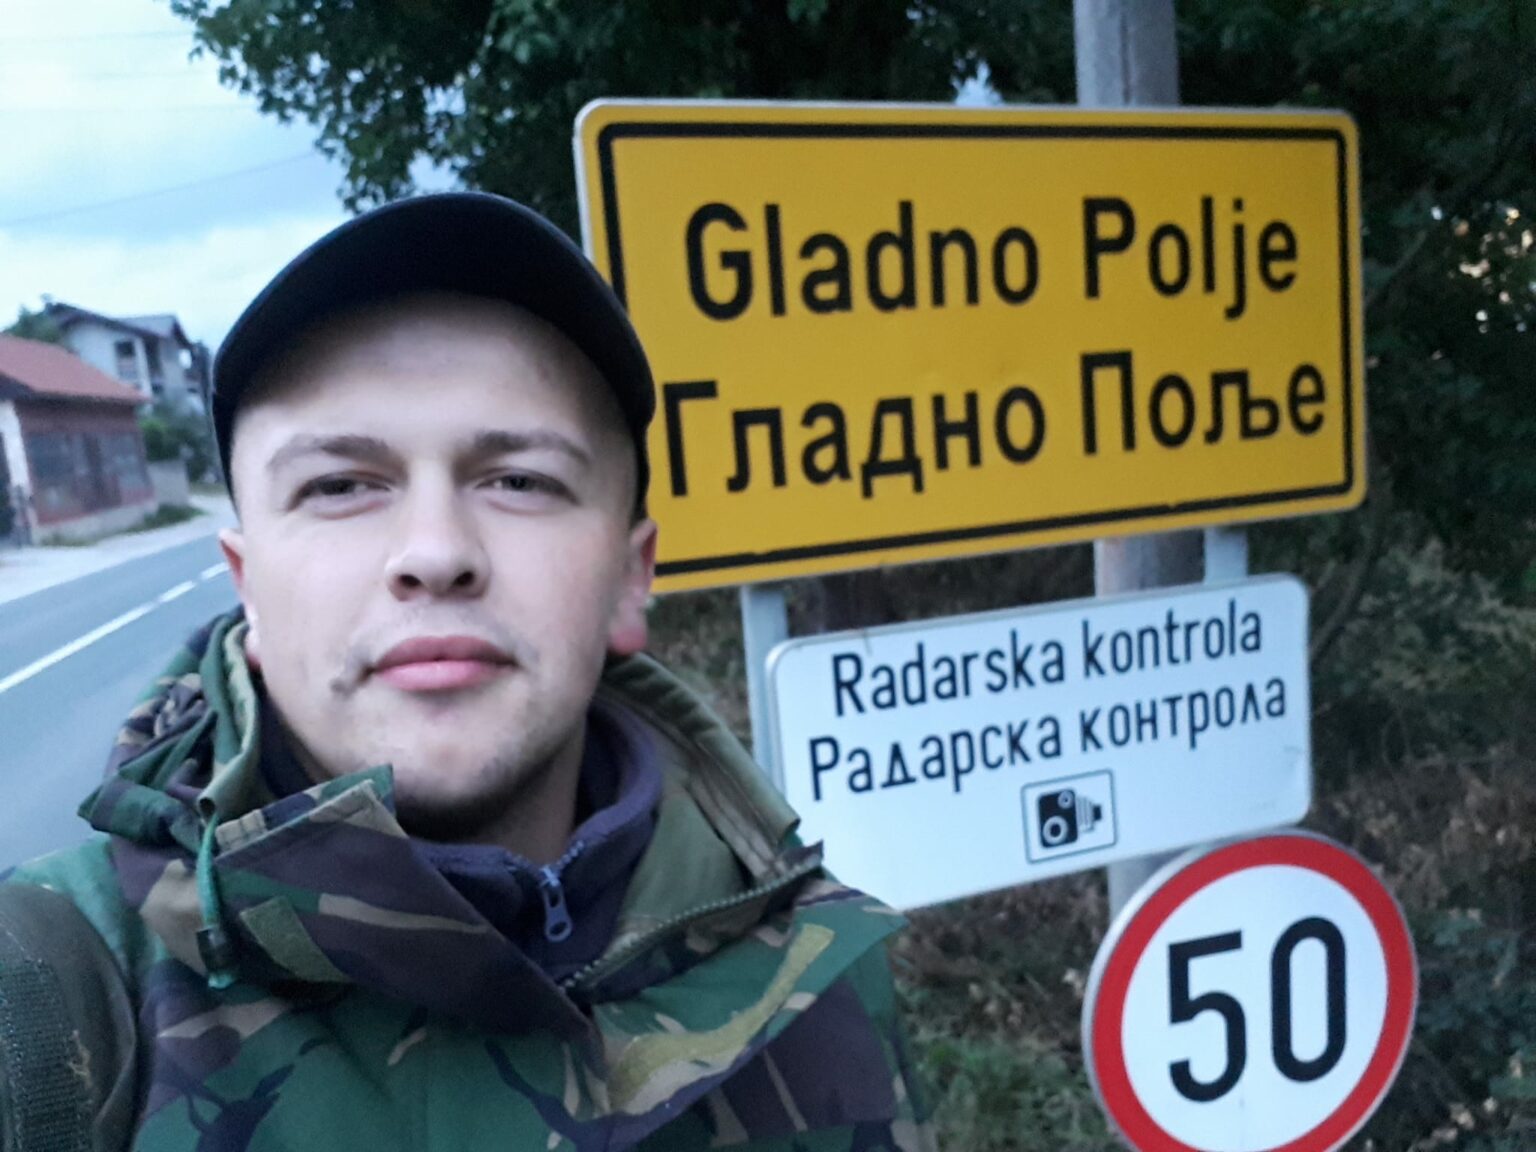 Ahmed Šehović će pješke preći 4.465 km kako bi obavio hadž